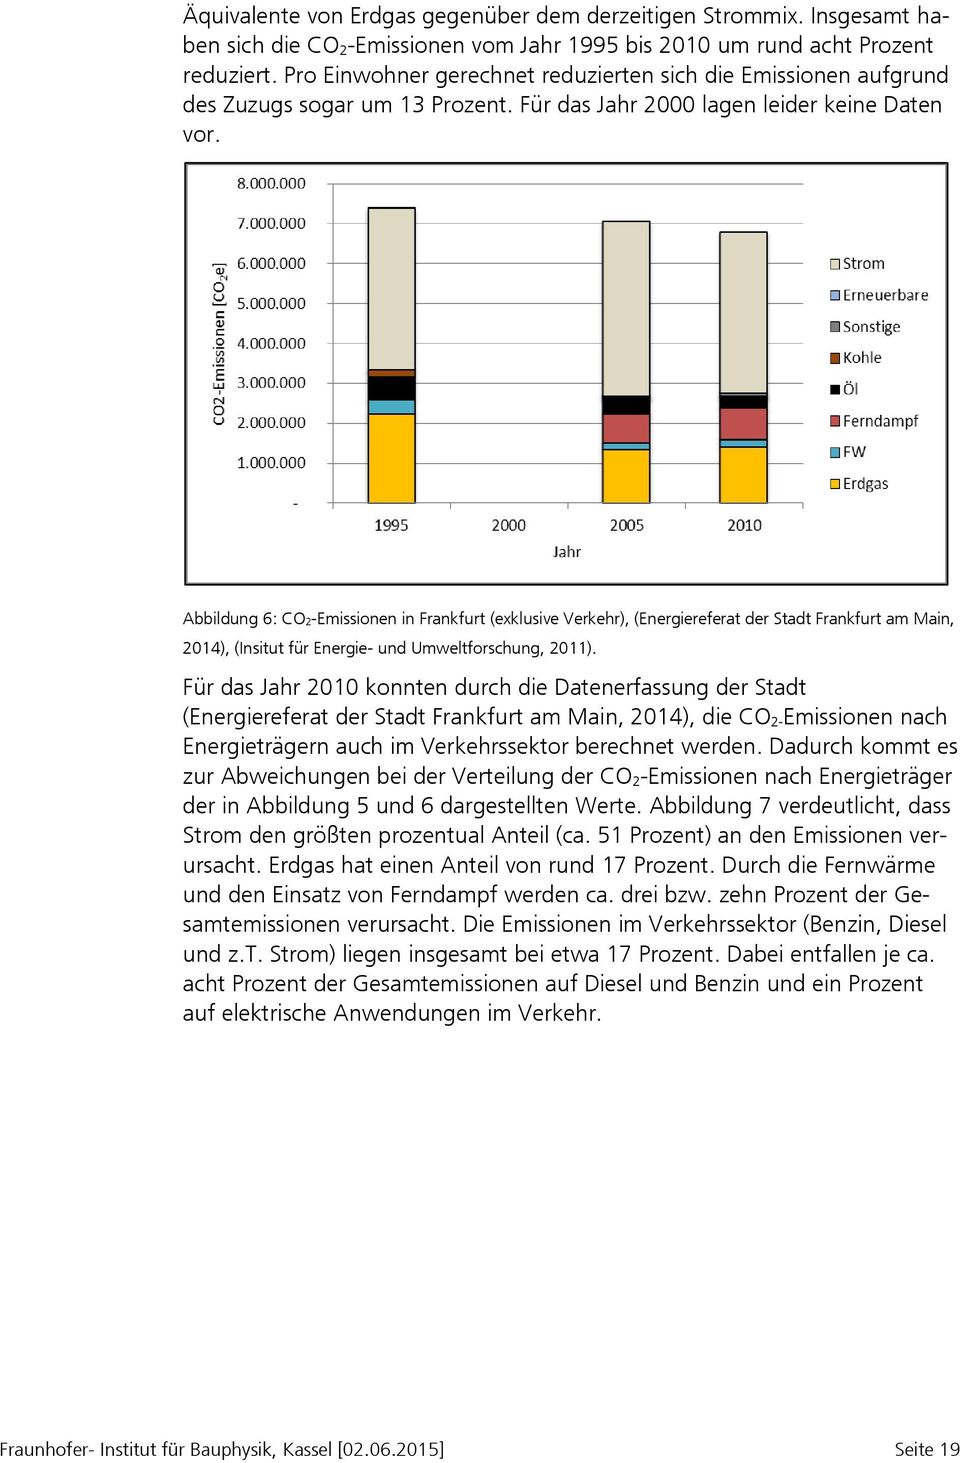 Abbildung 6: CO2-Emissionen in Frankfurt (exklusive Verkehr), (Energiereferat der Stadt Frankfurt am Main, 2014), (Insitut für Energie- und Umweltforschung, 2011).